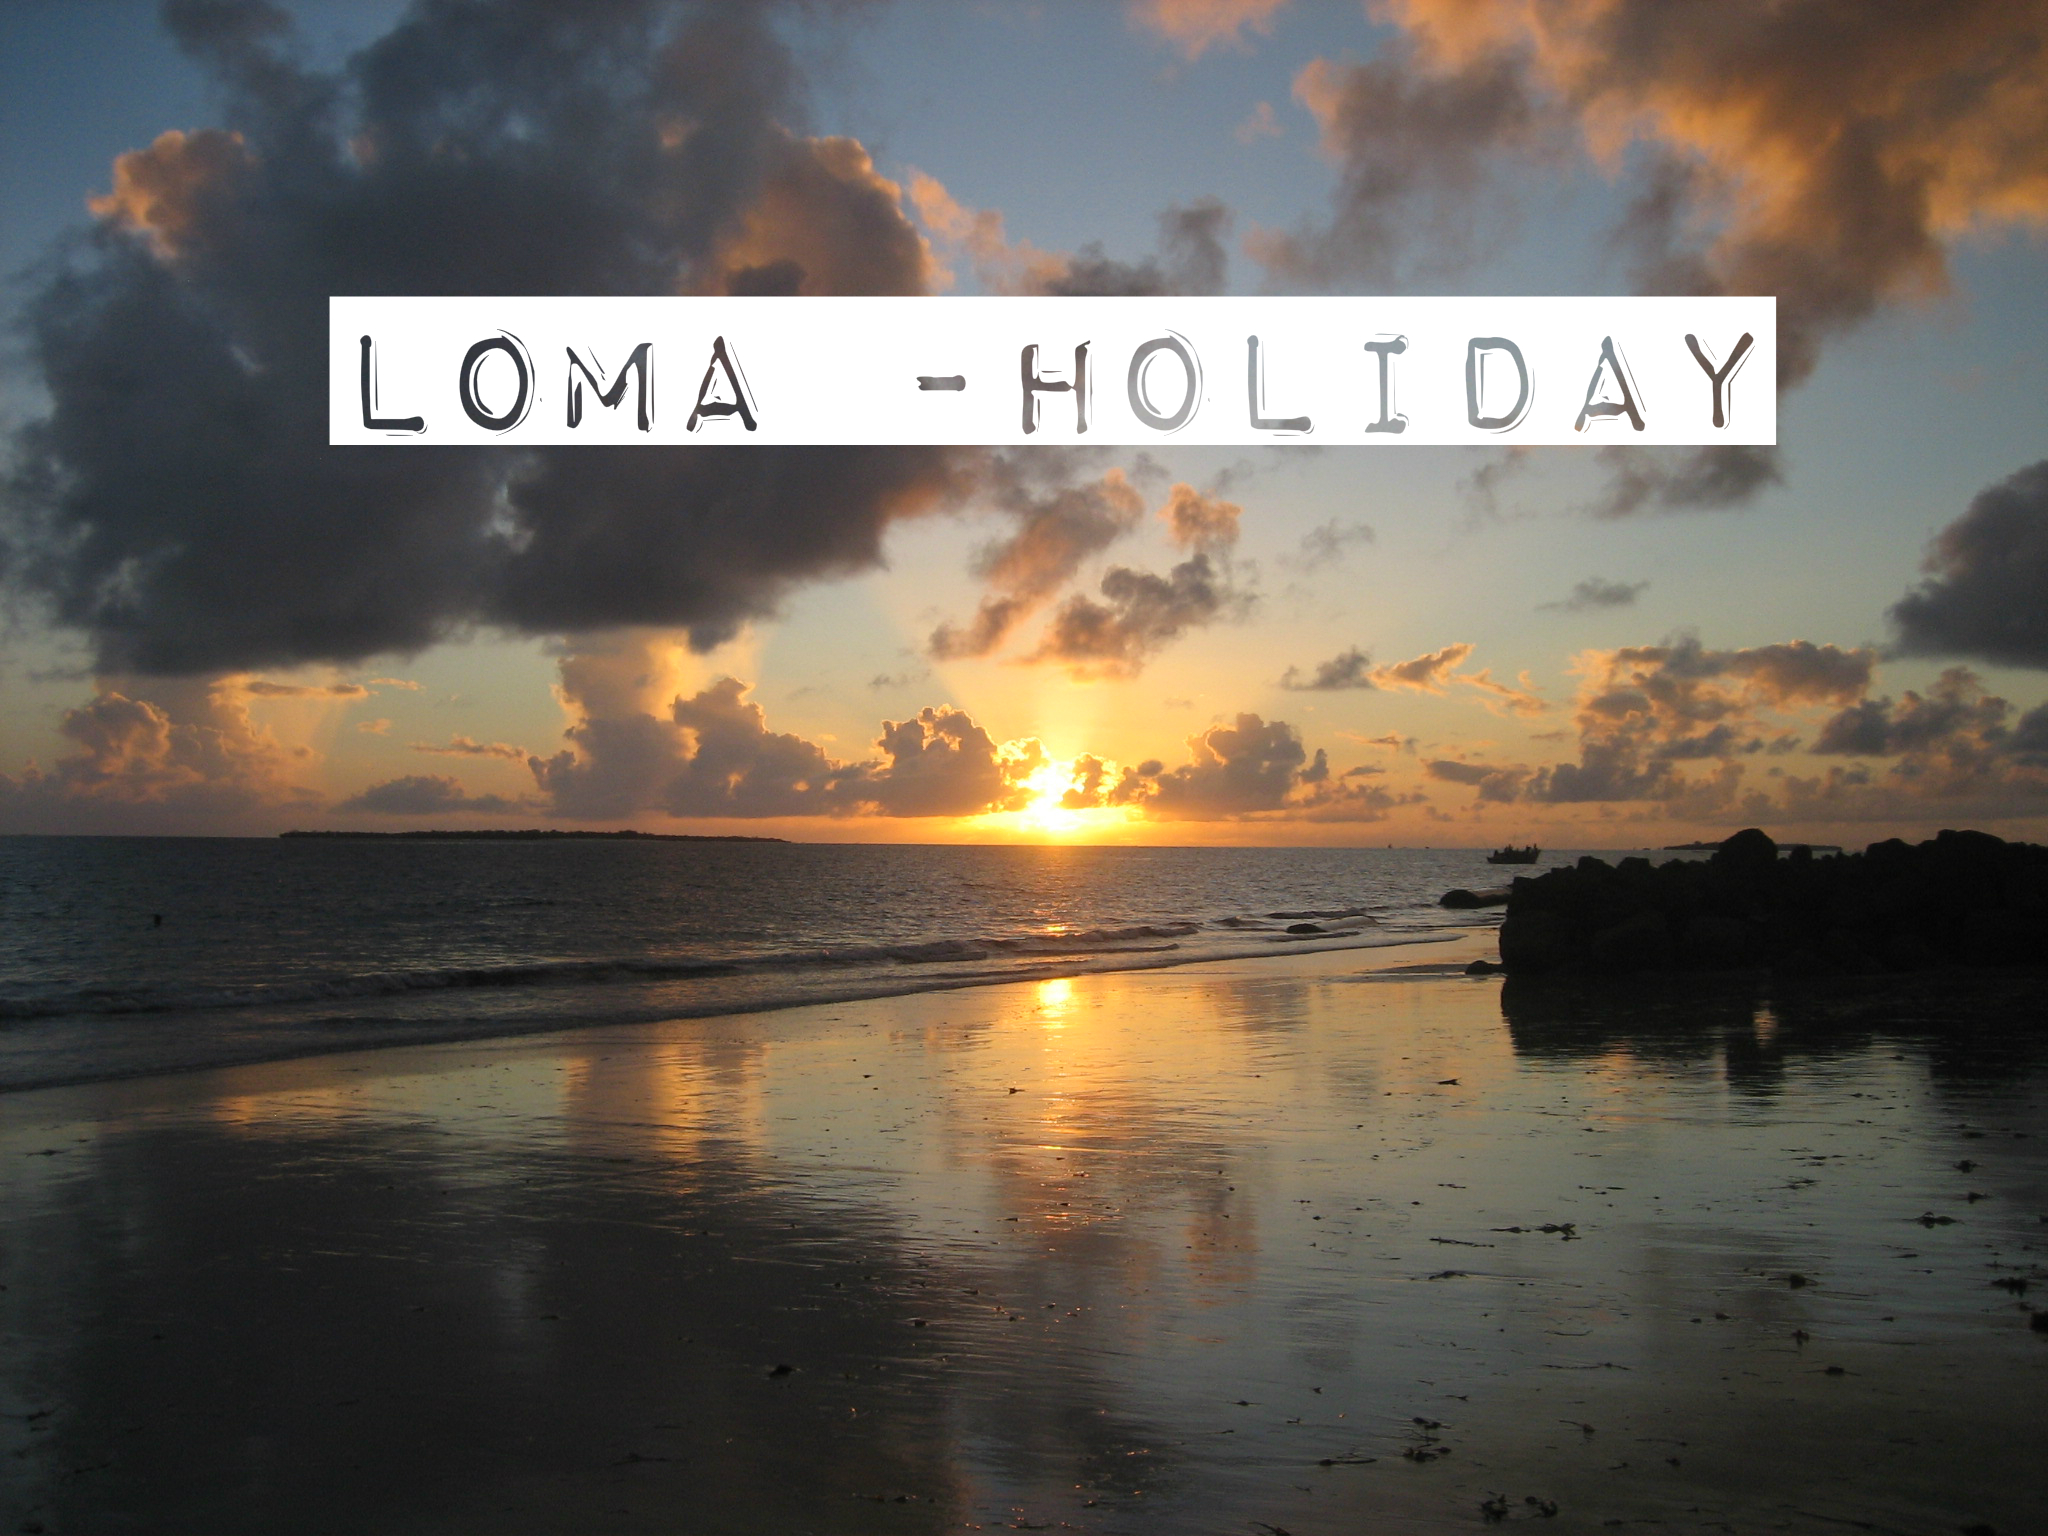 Loma – holiday